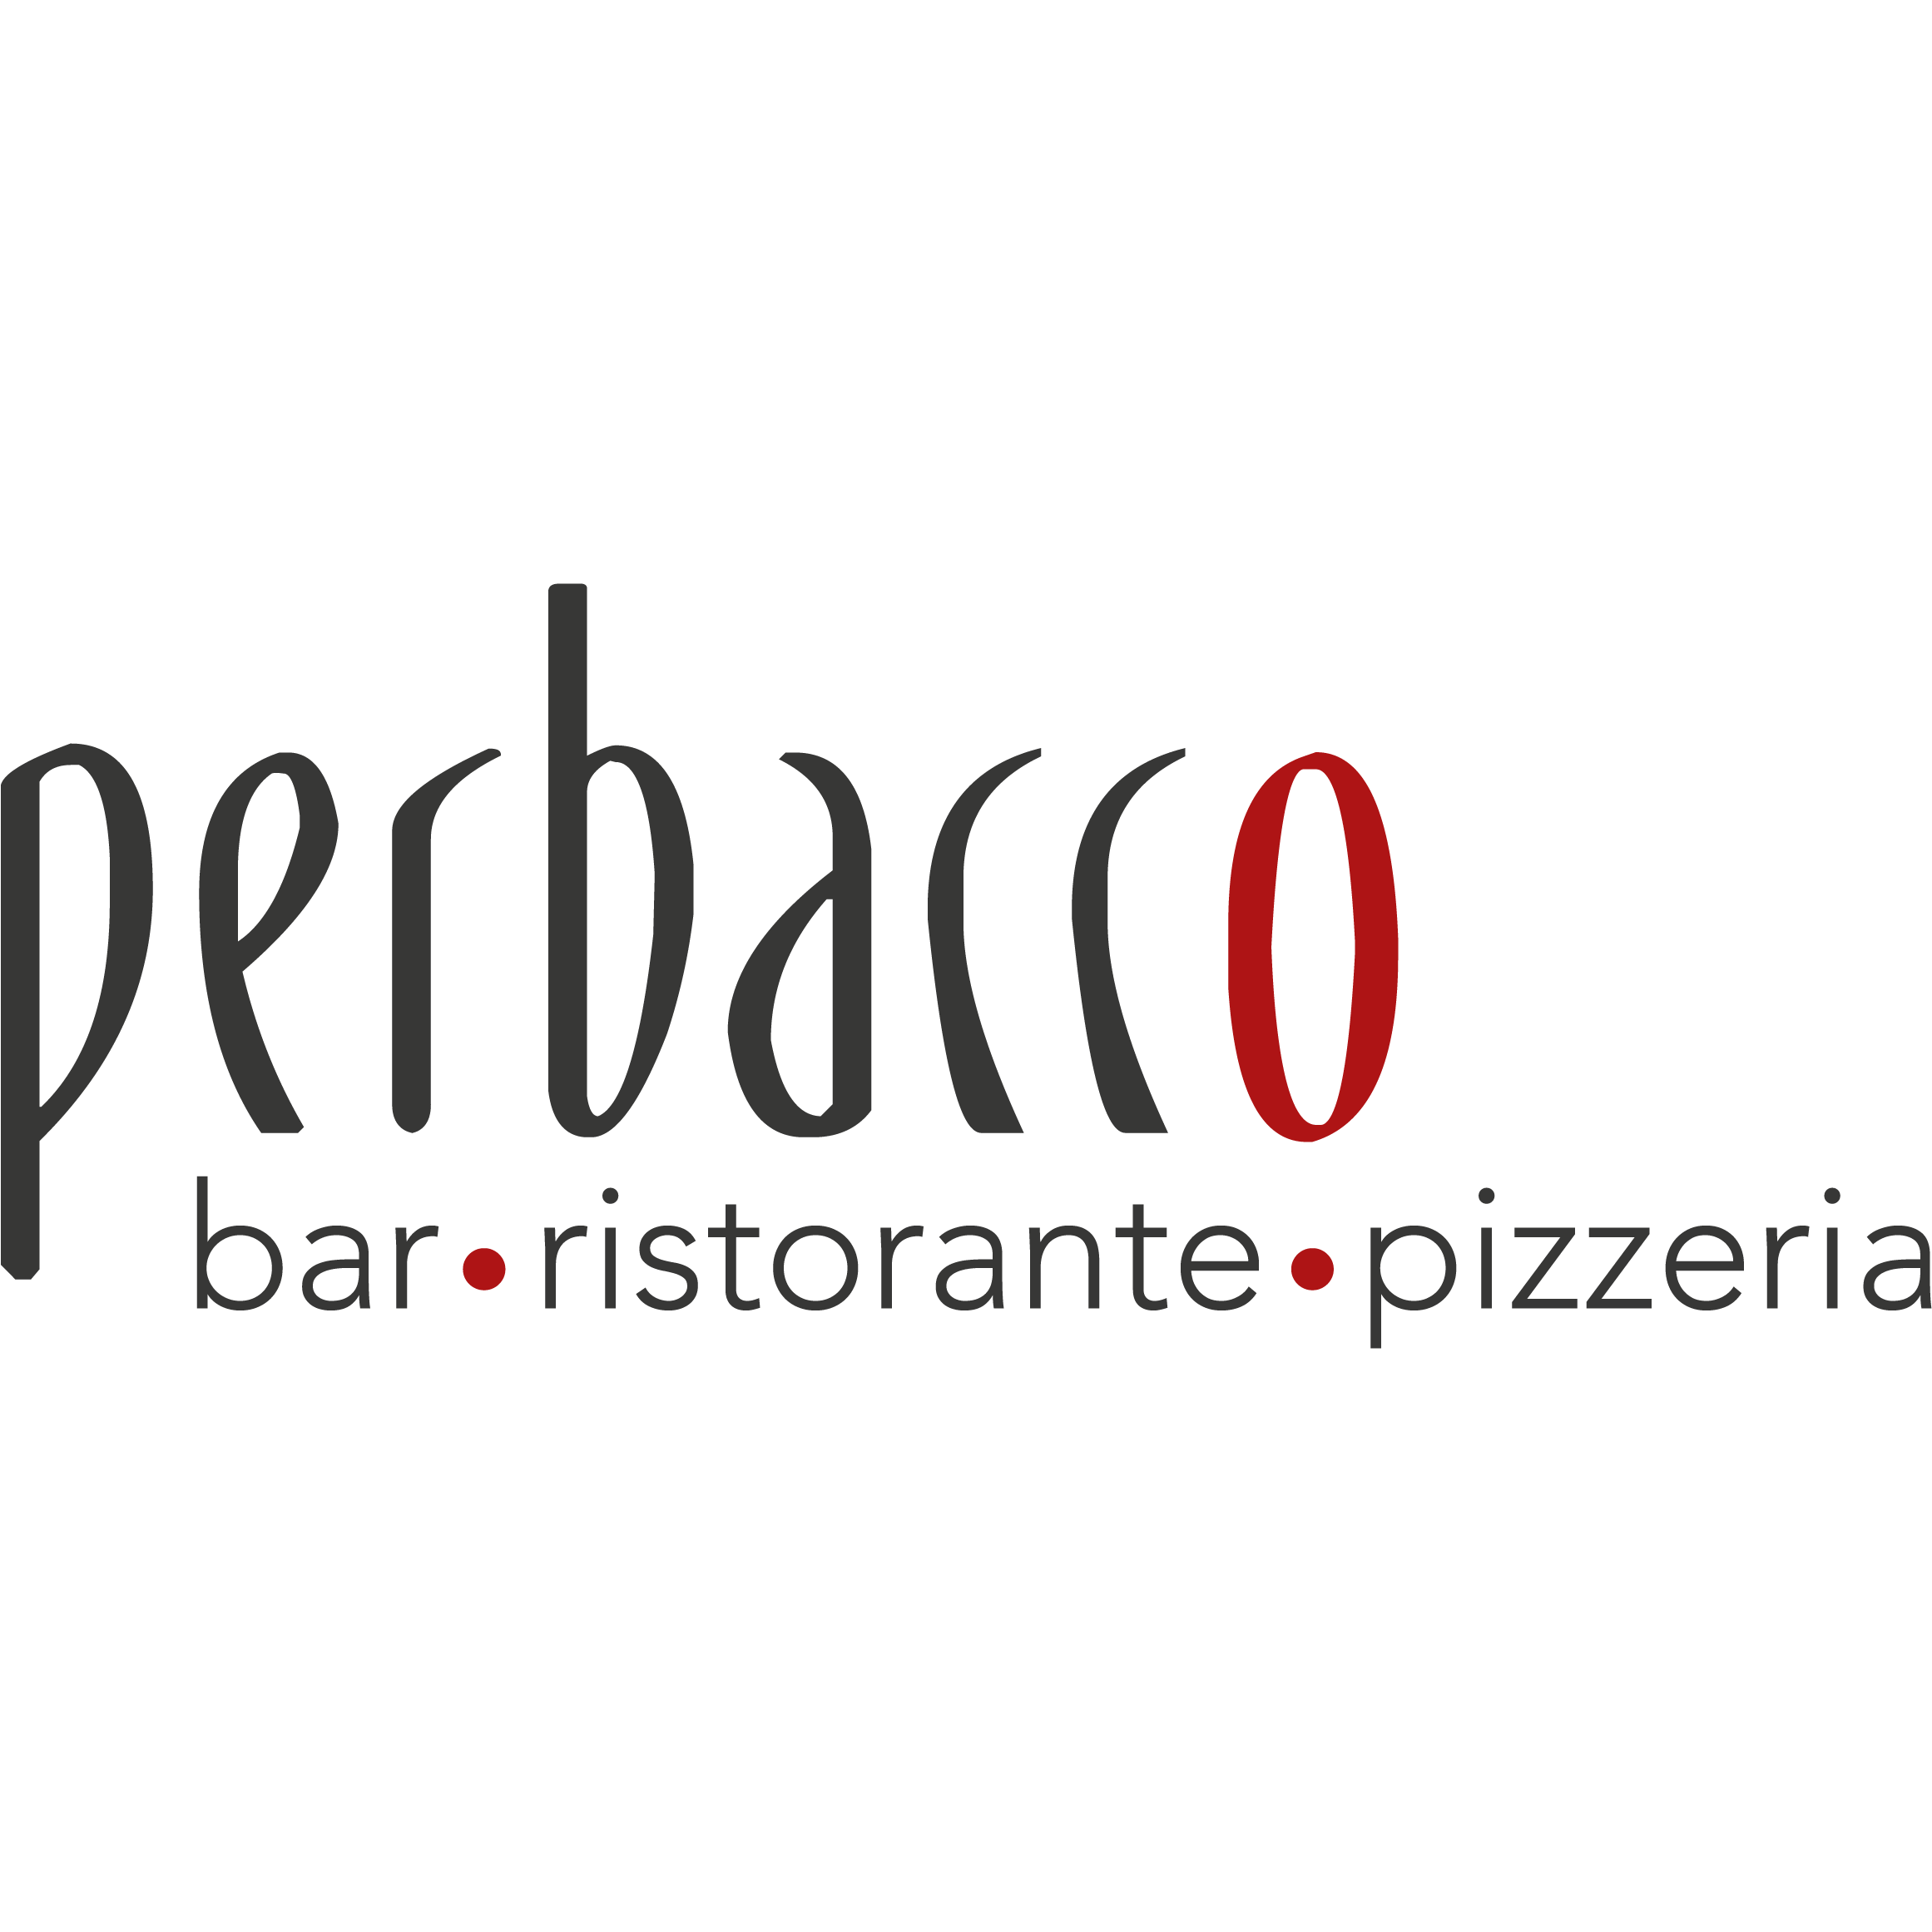 Ristorante Pizzeria Perbacco Logo